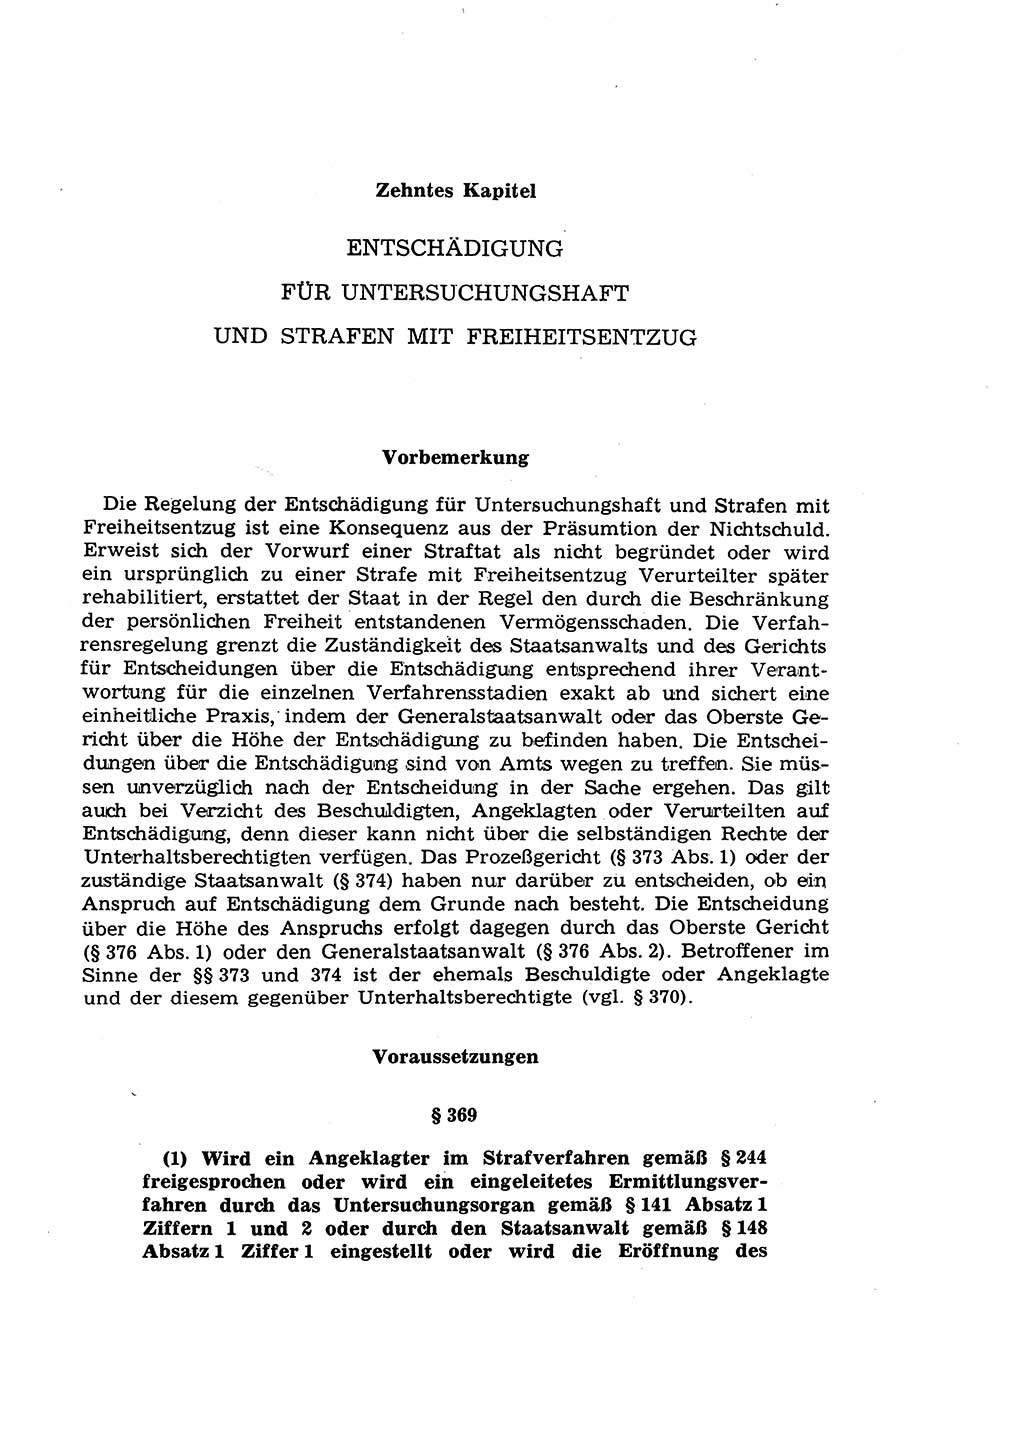 Strafprozeßrecht der DDR (Deutsche Demokratische Republik), Lehrkommentar zur Strafprozeßordnung (StPO) 1968, Seite 409 (Strafprozeßr. DDR Lehrkomm. StPO 19688, S. 409)